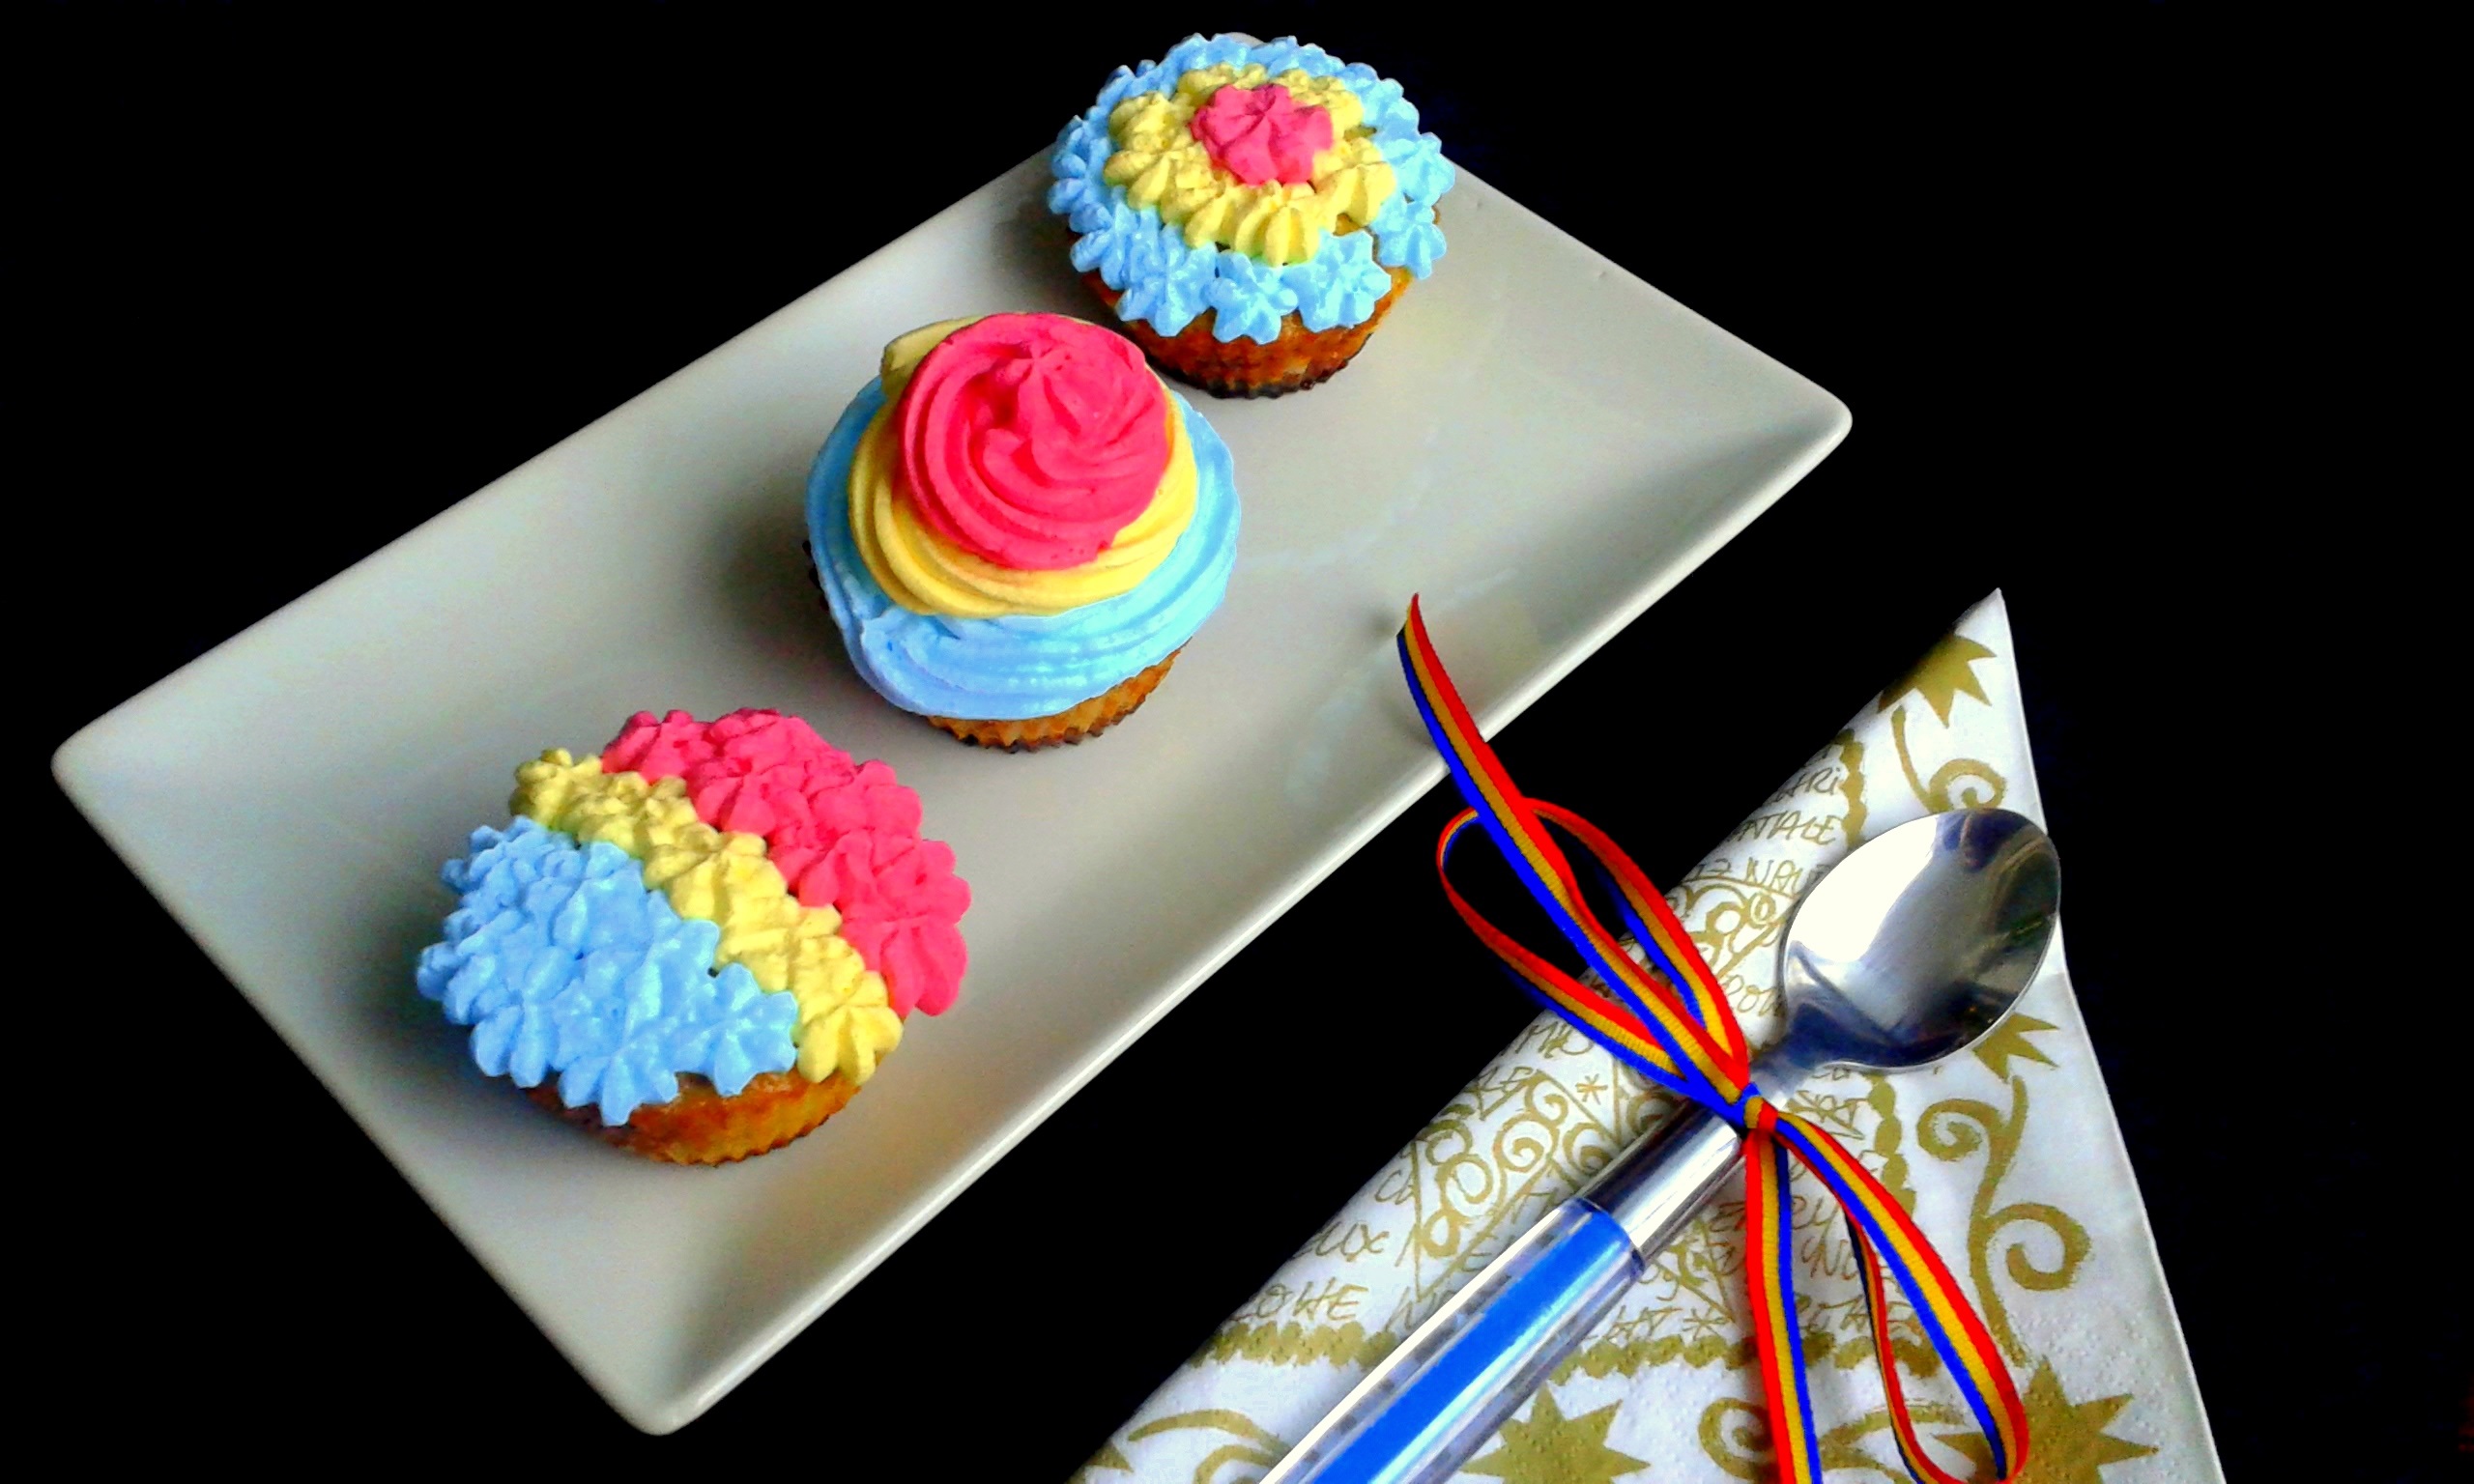 Briose cu dulceata decorate in tricolor